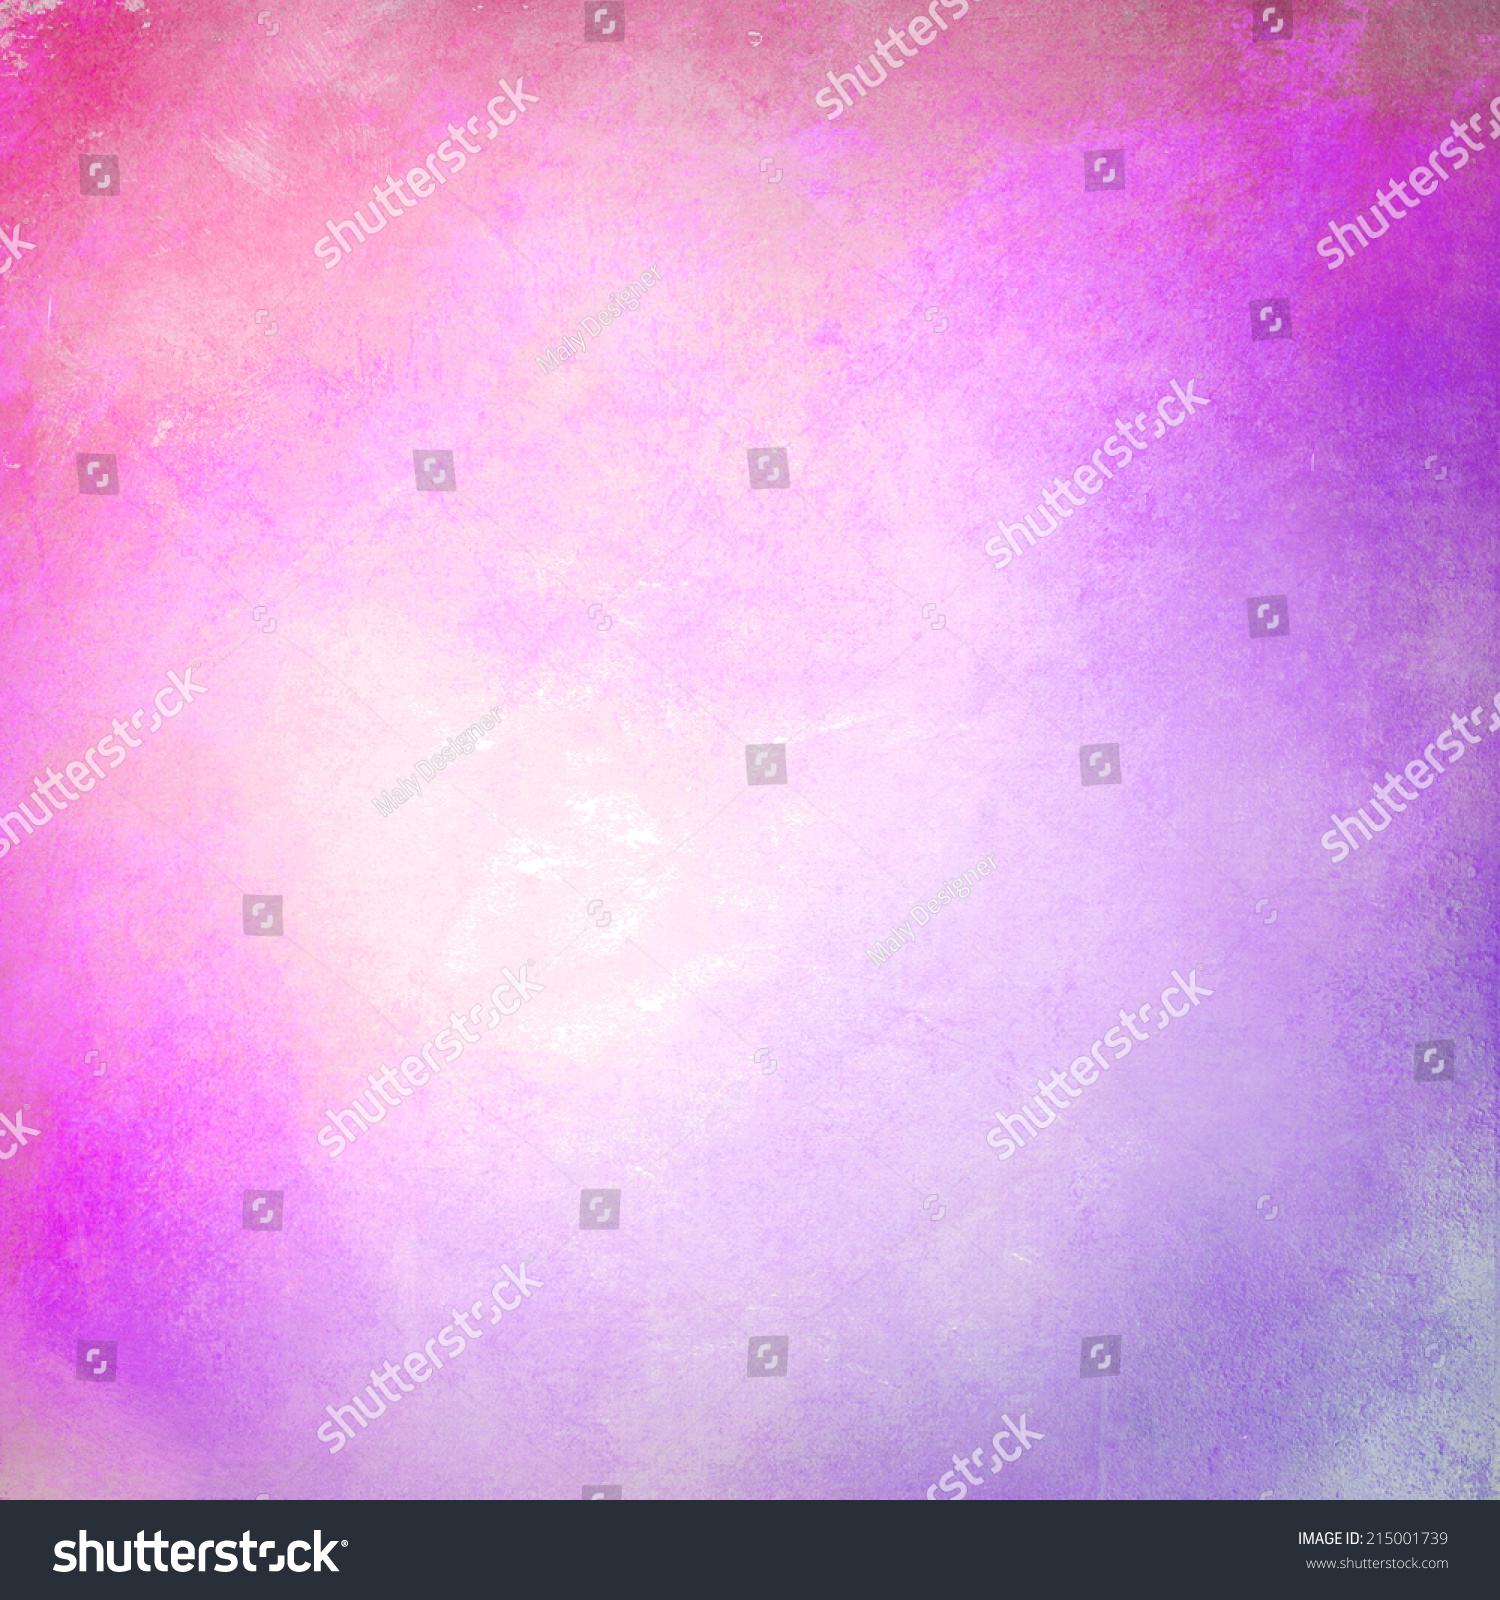 Beautiful Purple Pastel Background Stock Photo 215001739 - Shutterstock